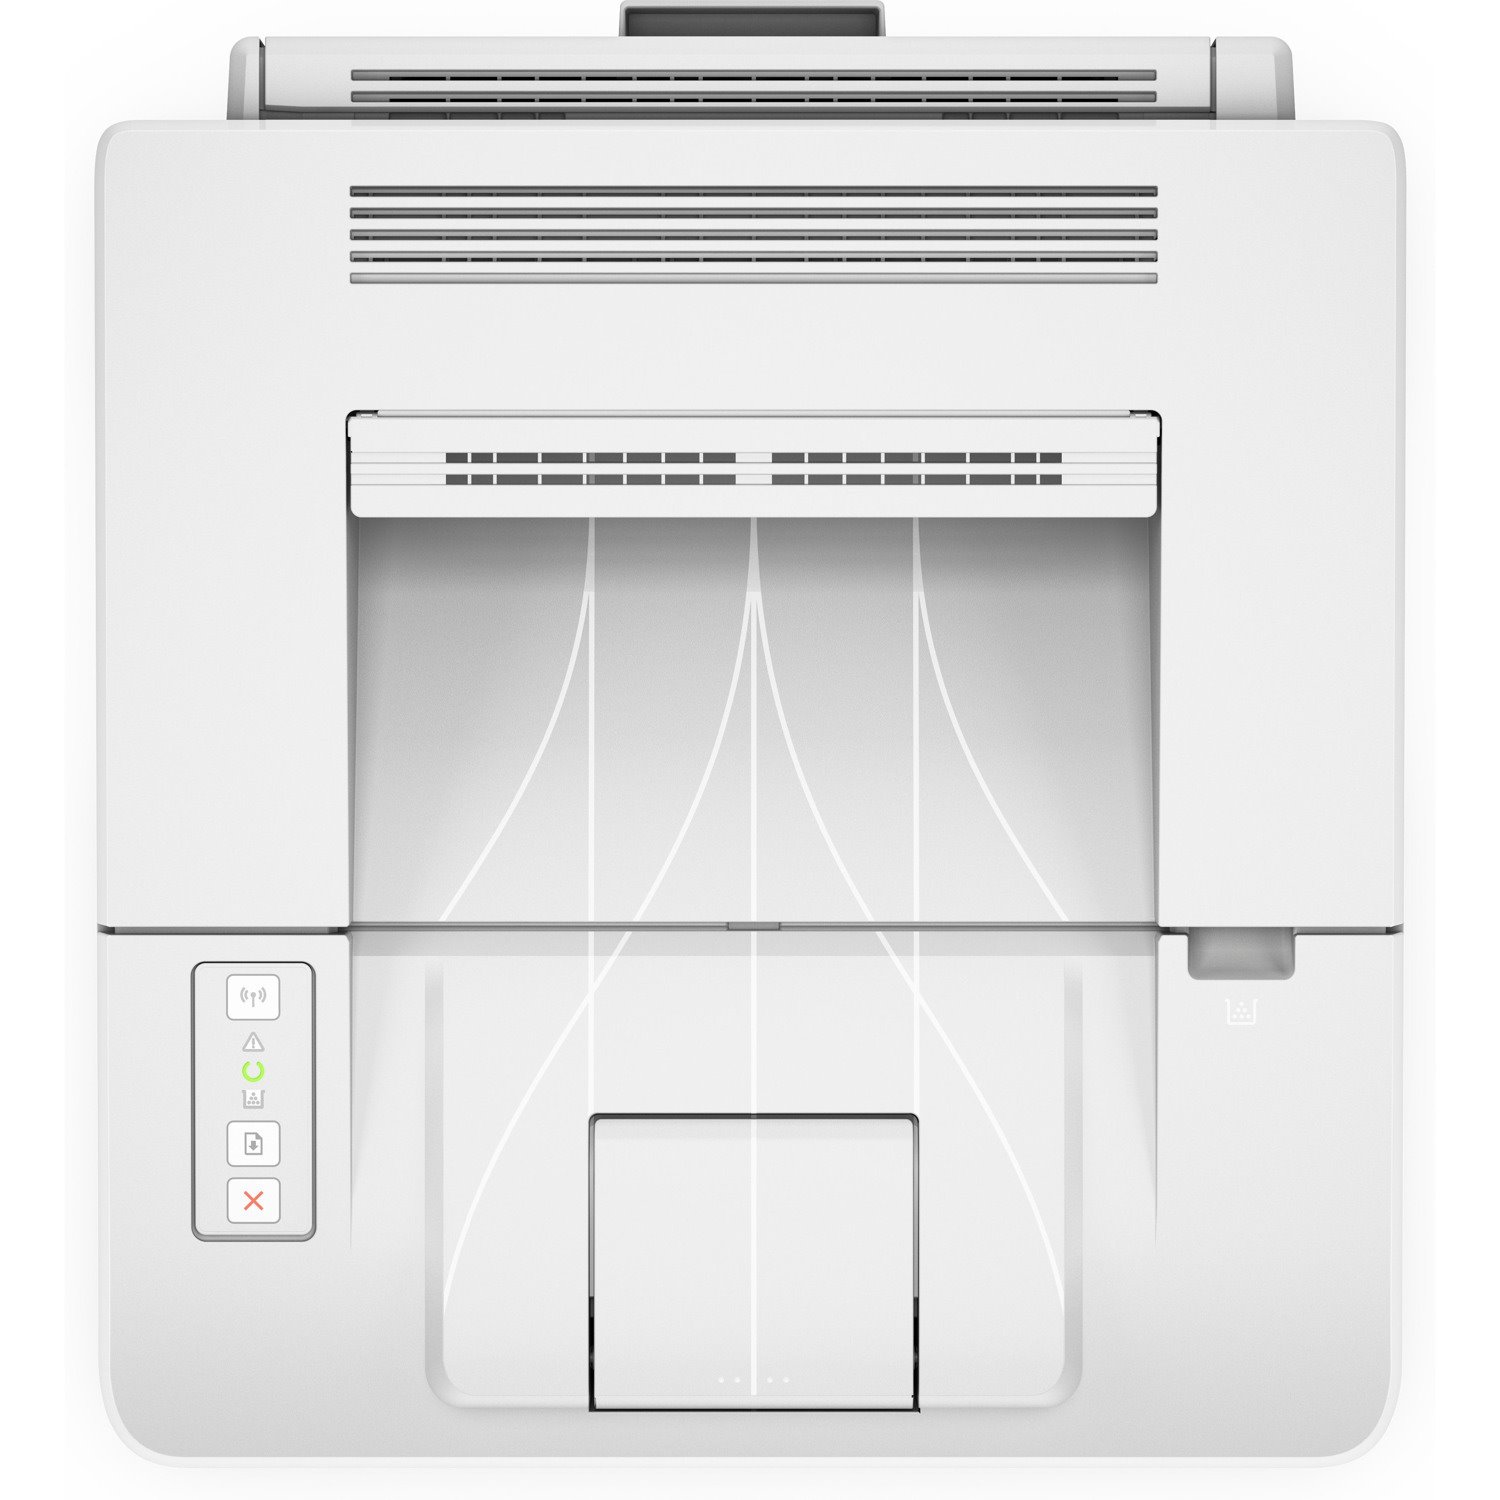 HP LaserJet Pro M203 M203dw Desktop Laser Printer - Monochrome